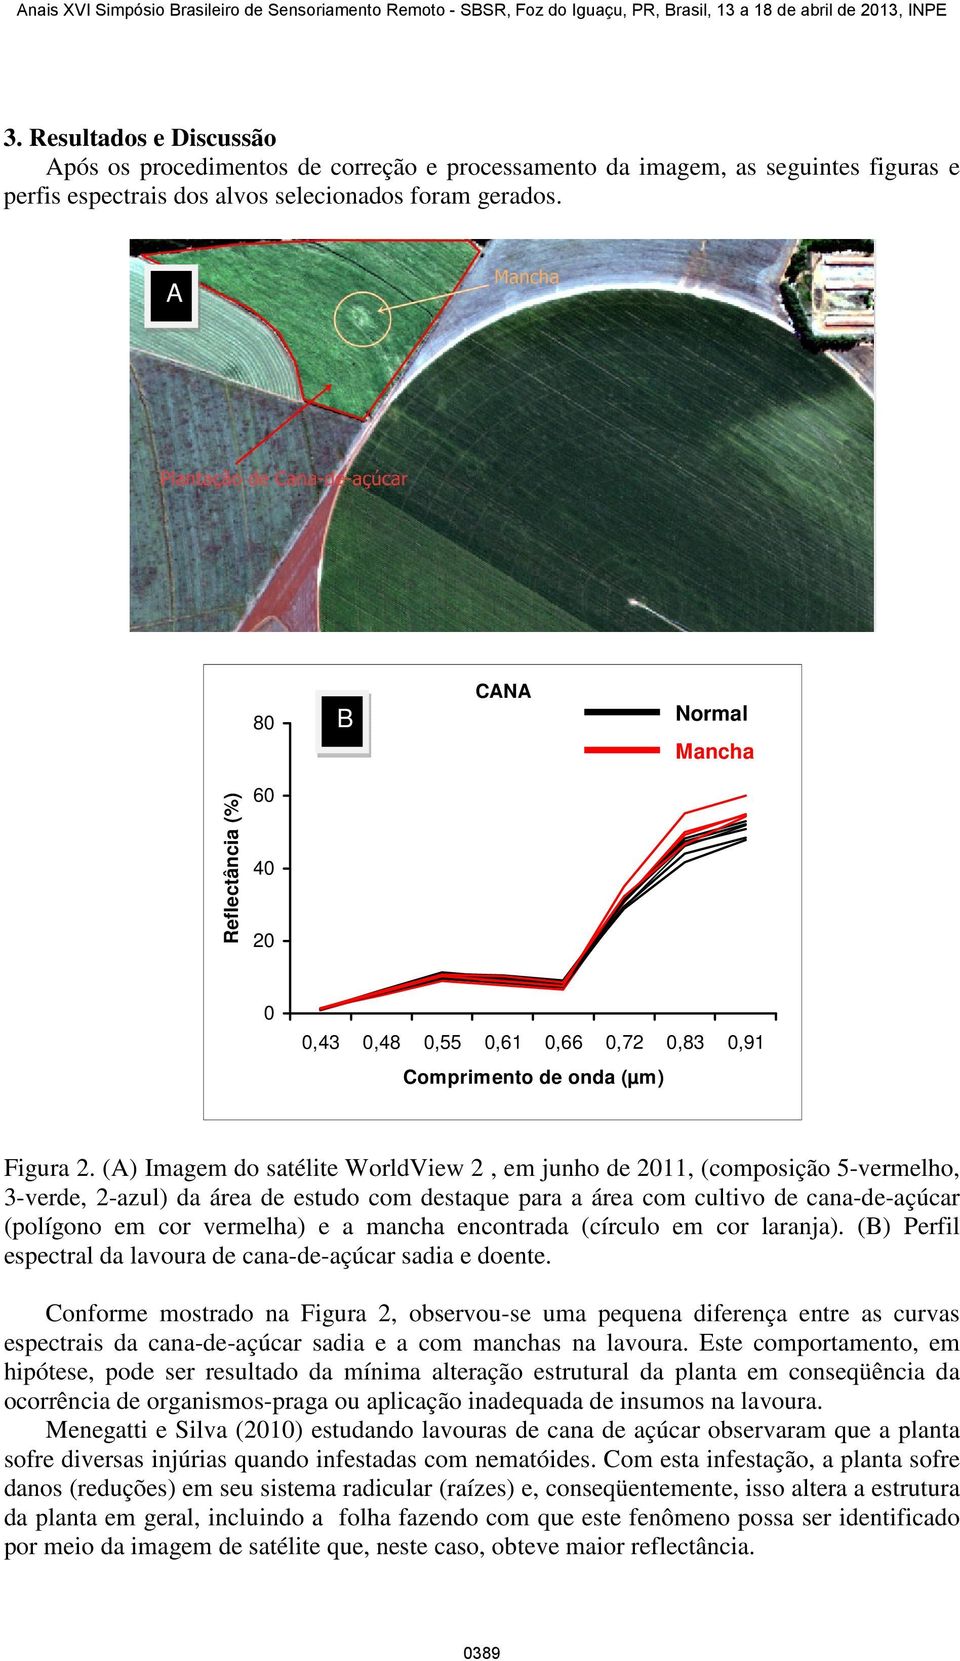 (A) Imagem do satélite WorldView 2, em junho de 211, (composição 5-vermelho, 3-verde, 2-azul) da área de estudo com destaque para a área com cultivo de cana-de-açúcar (polígono em cor vermelha) e a